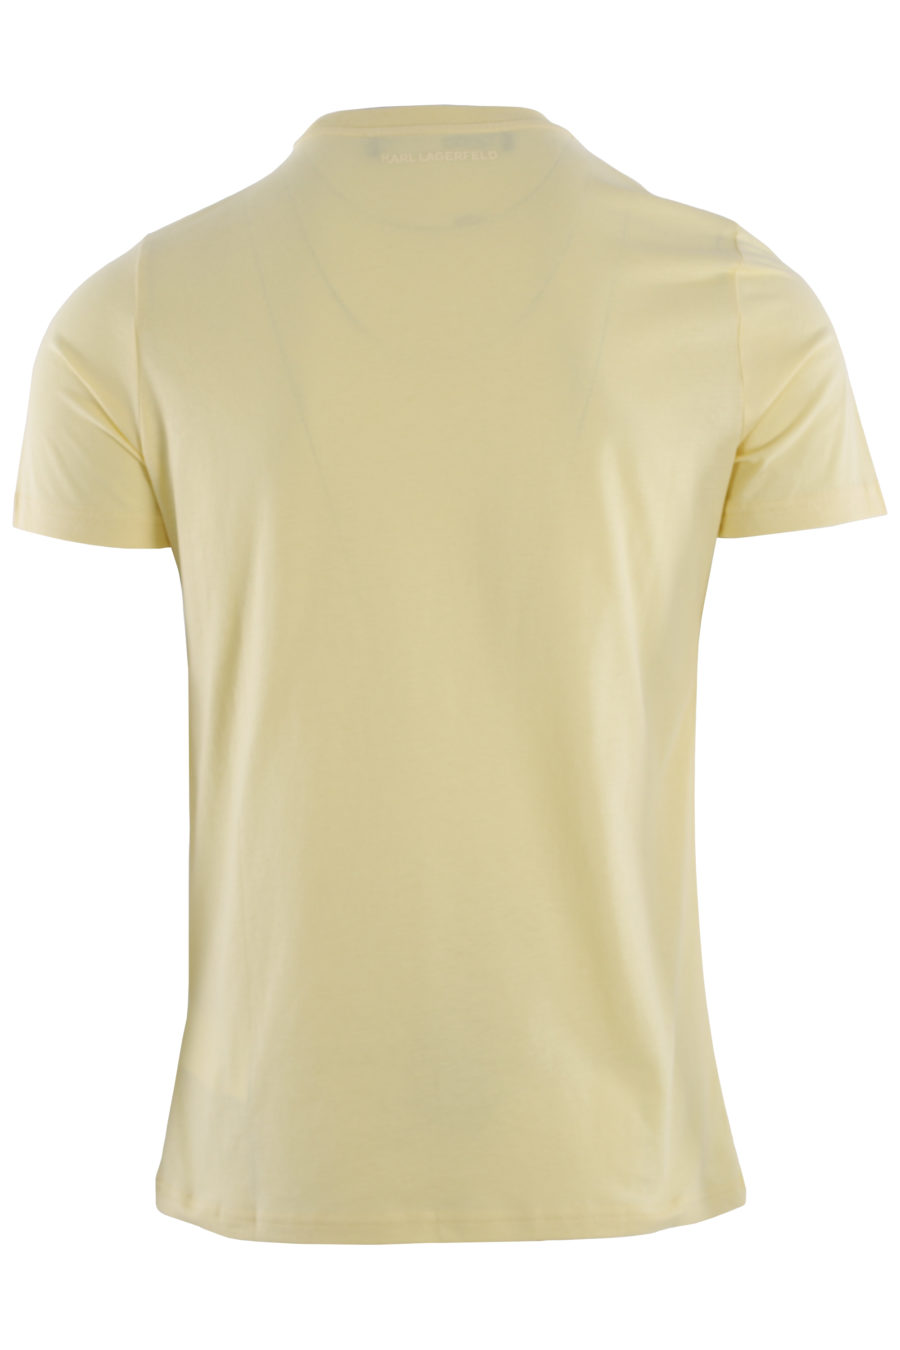 T-shirt amarela com impressão do logótipo - IMG 0435